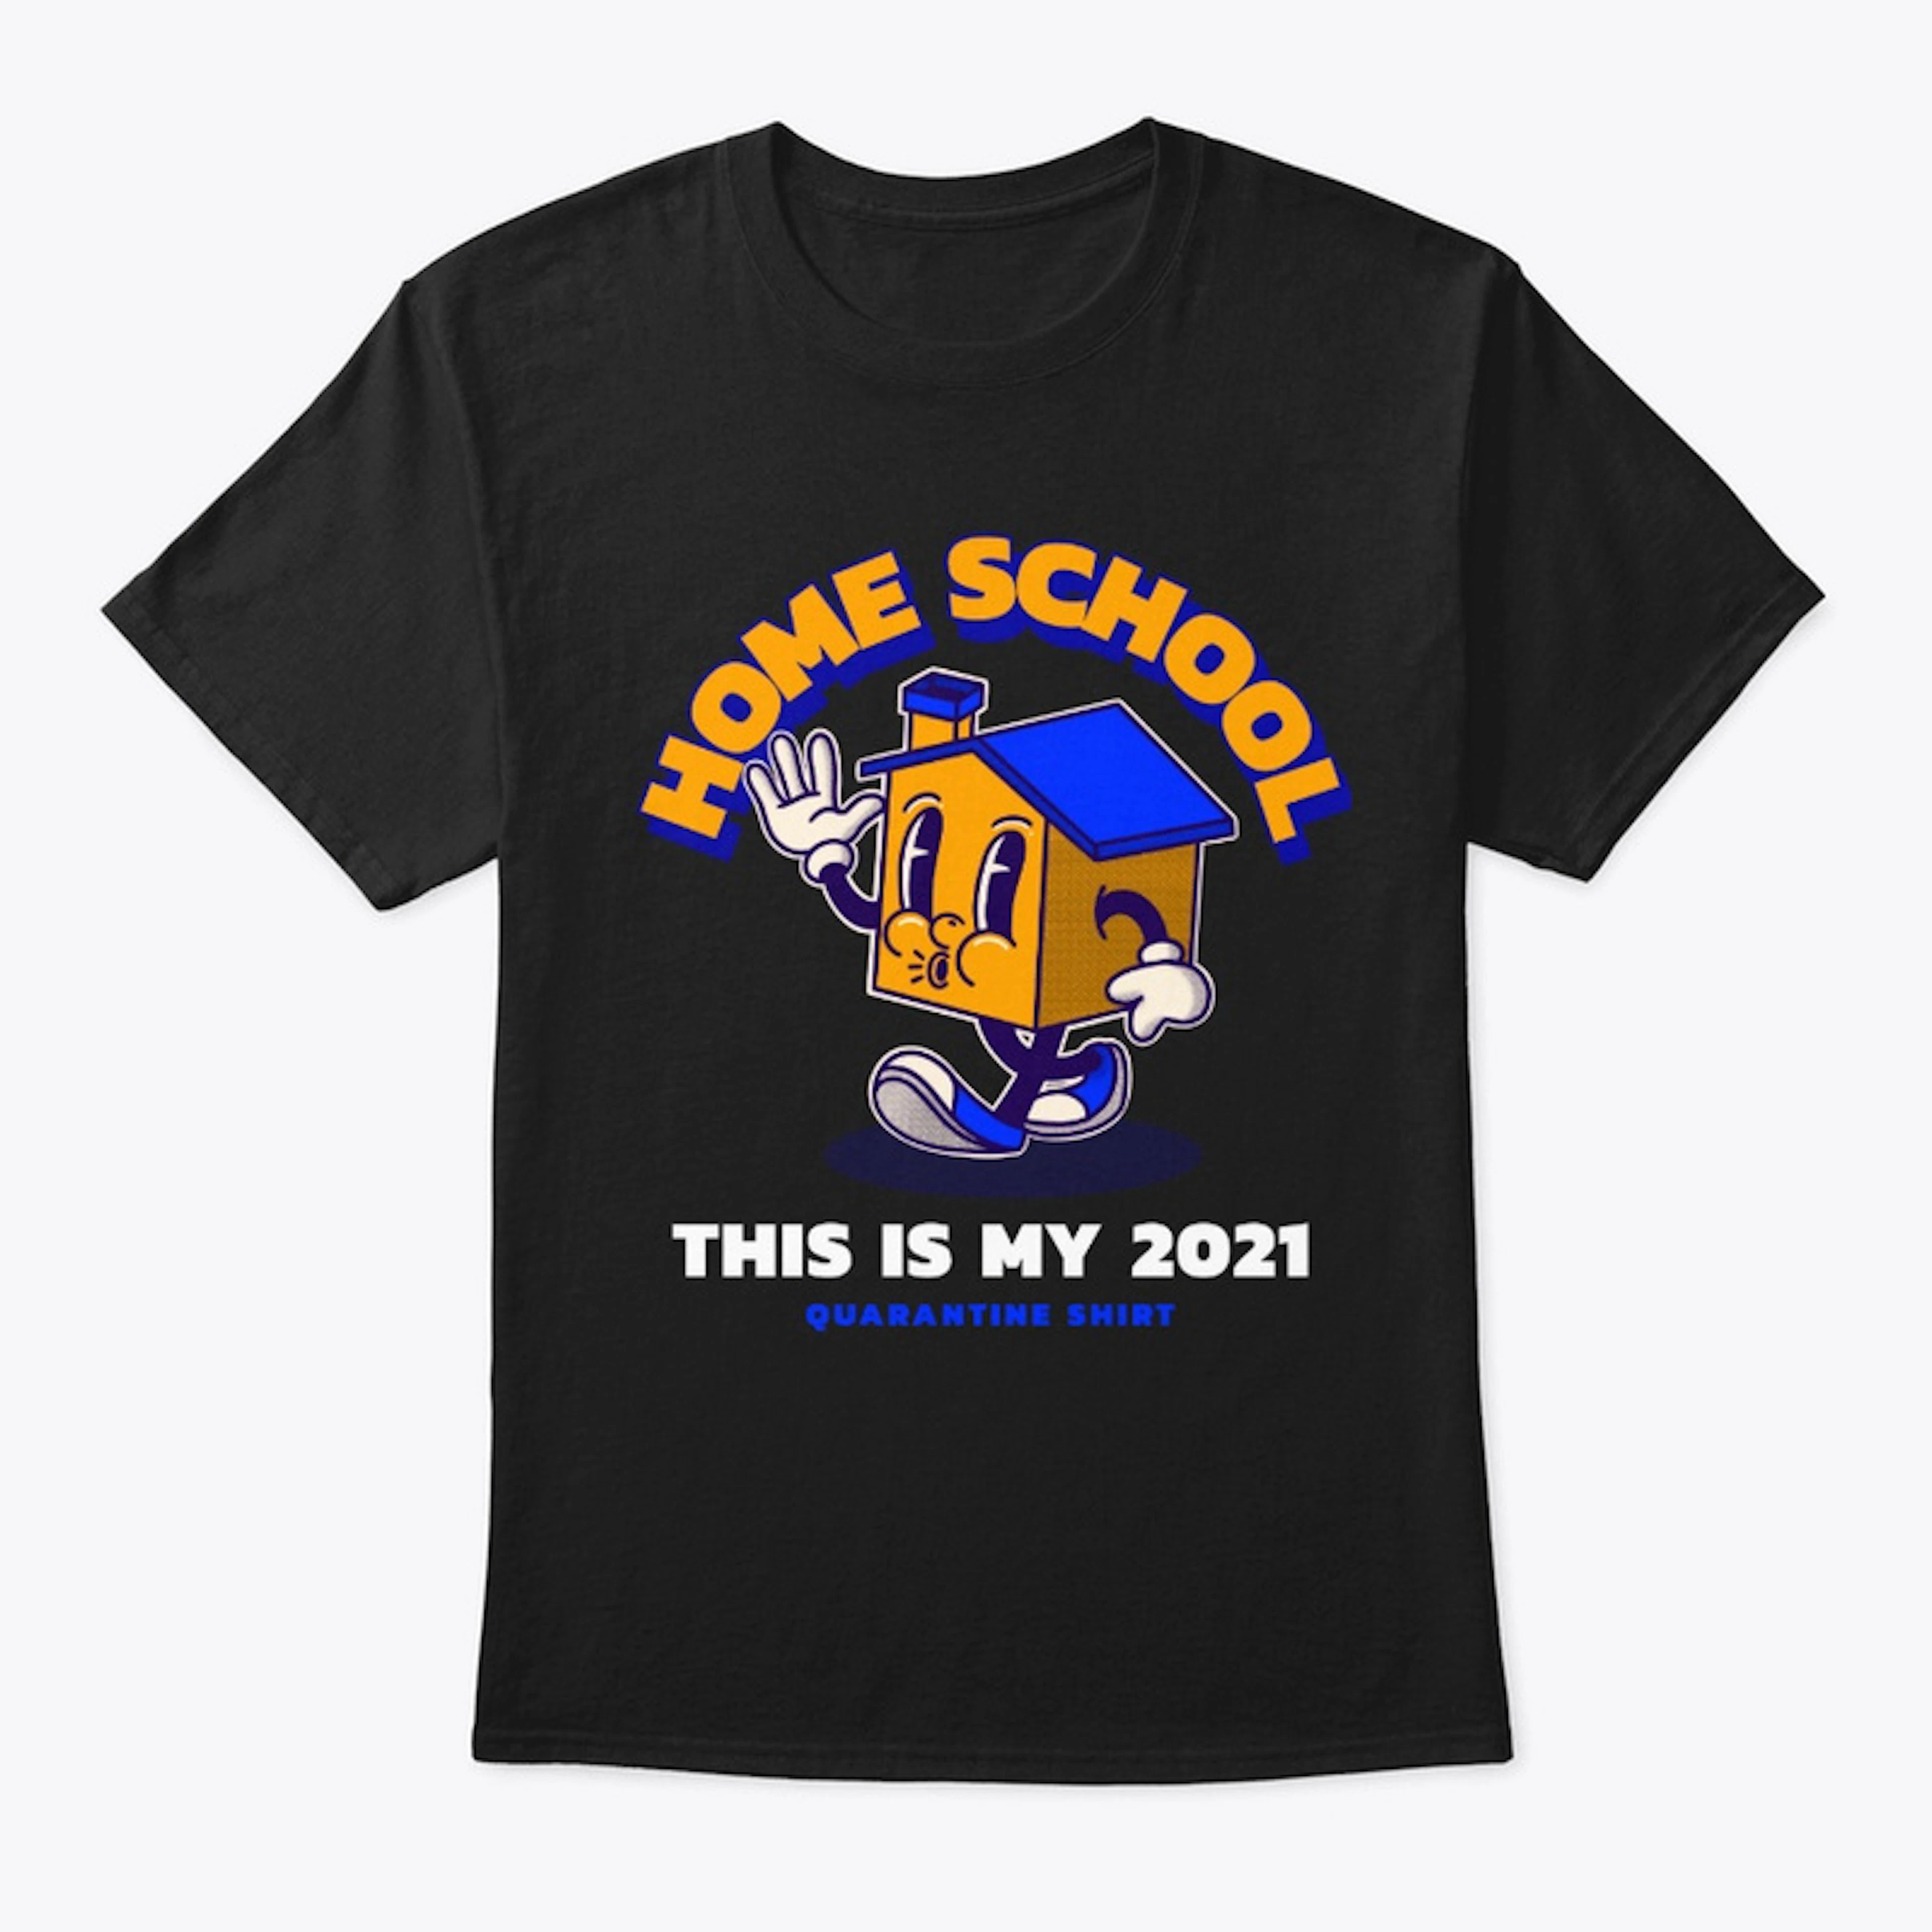 Home School 2021